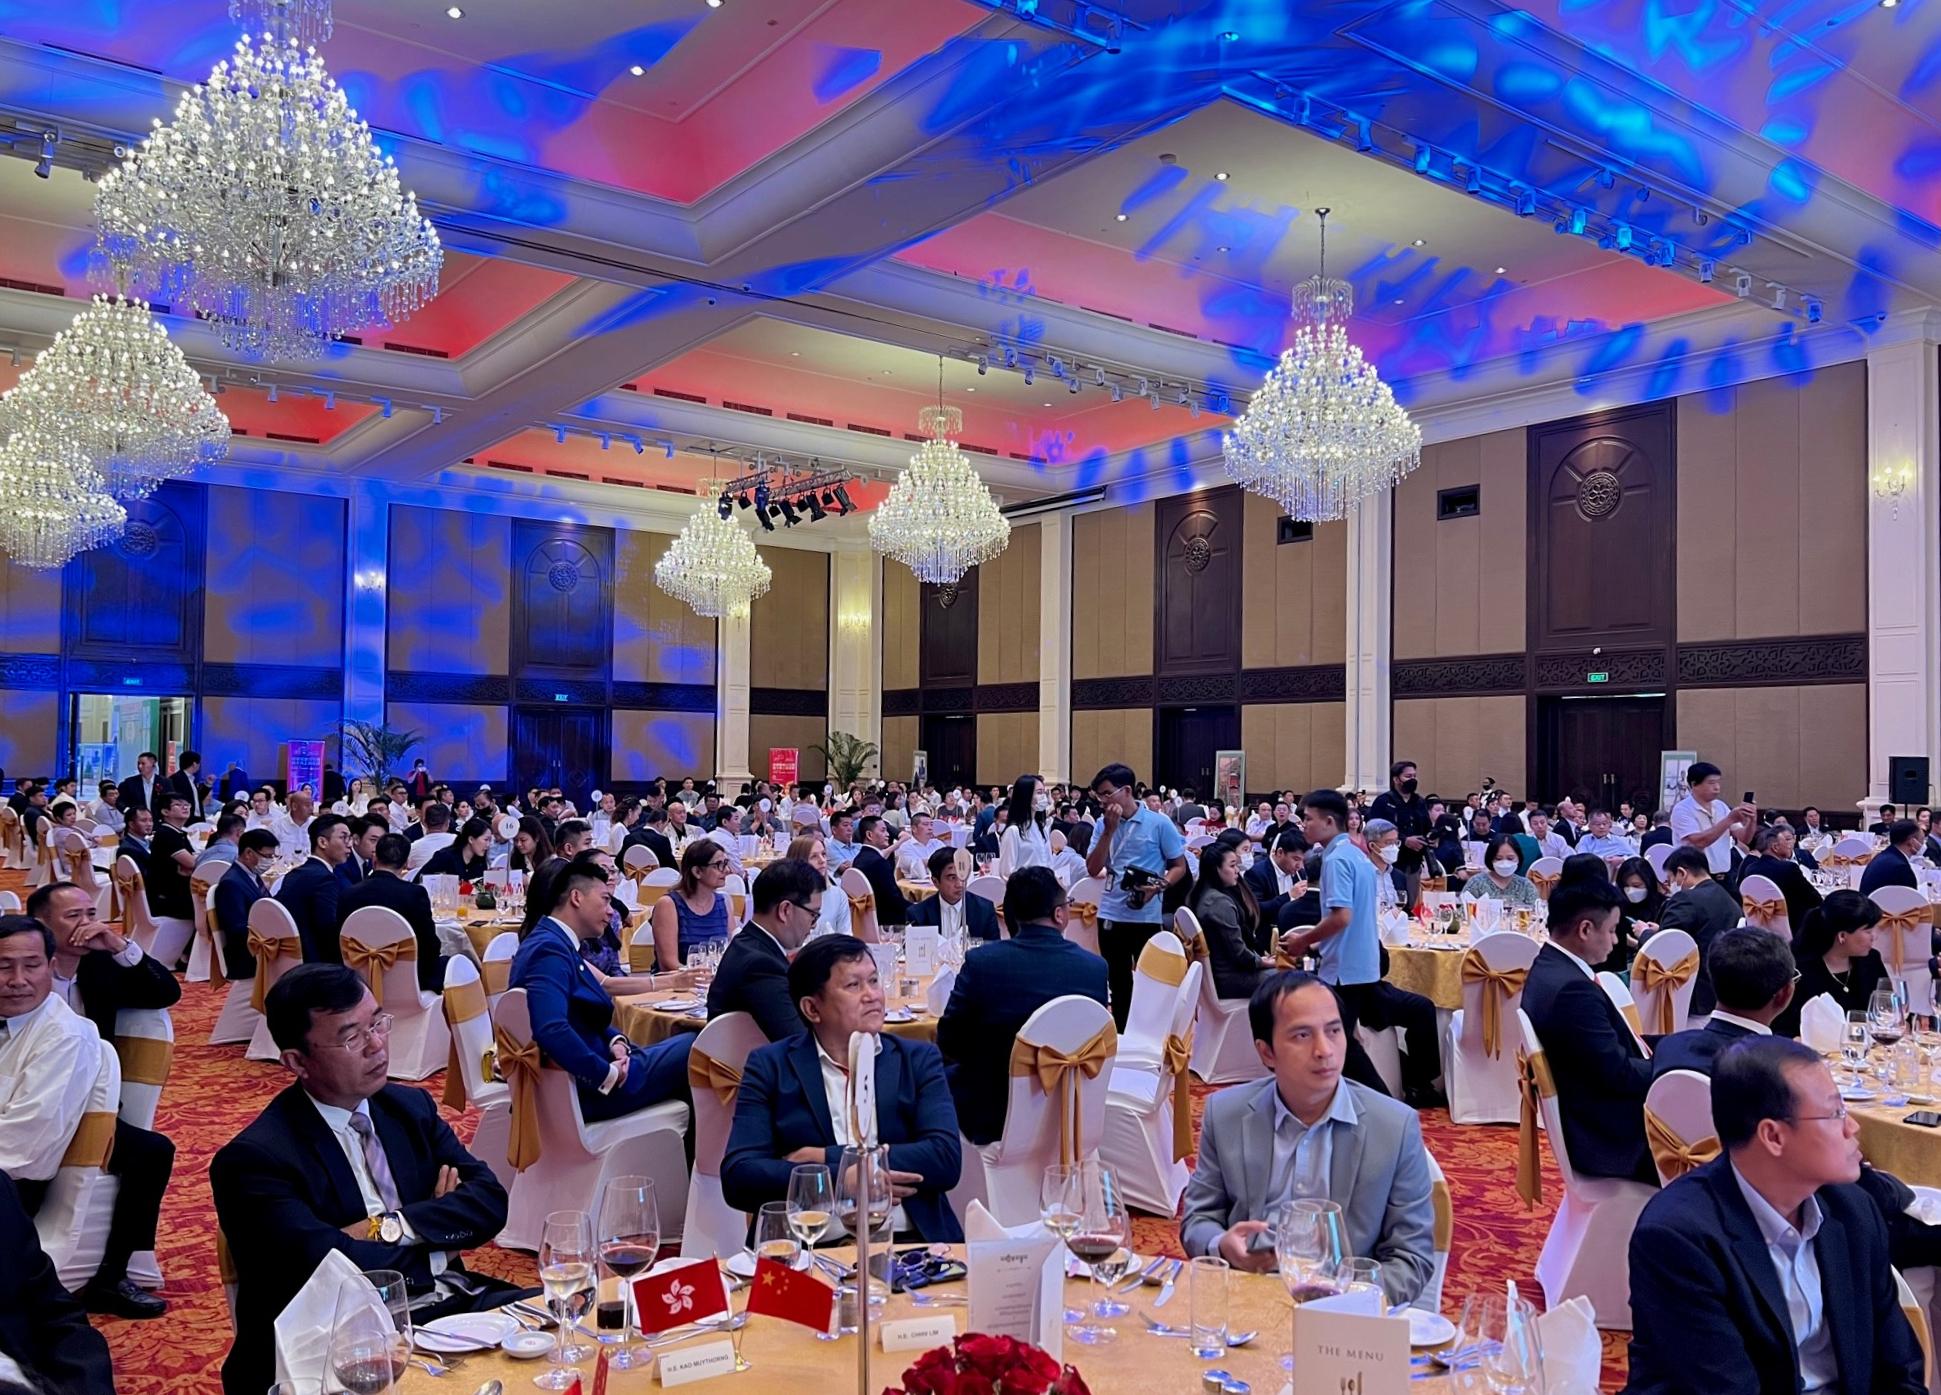 商務及經濟發展局局長丘應樺今日（九月十八日）在柬埔寨金邊出席慶祝香港特別行政區成立二十五周年午宴。午宴吸引超過四百名當地政商界人士參加。